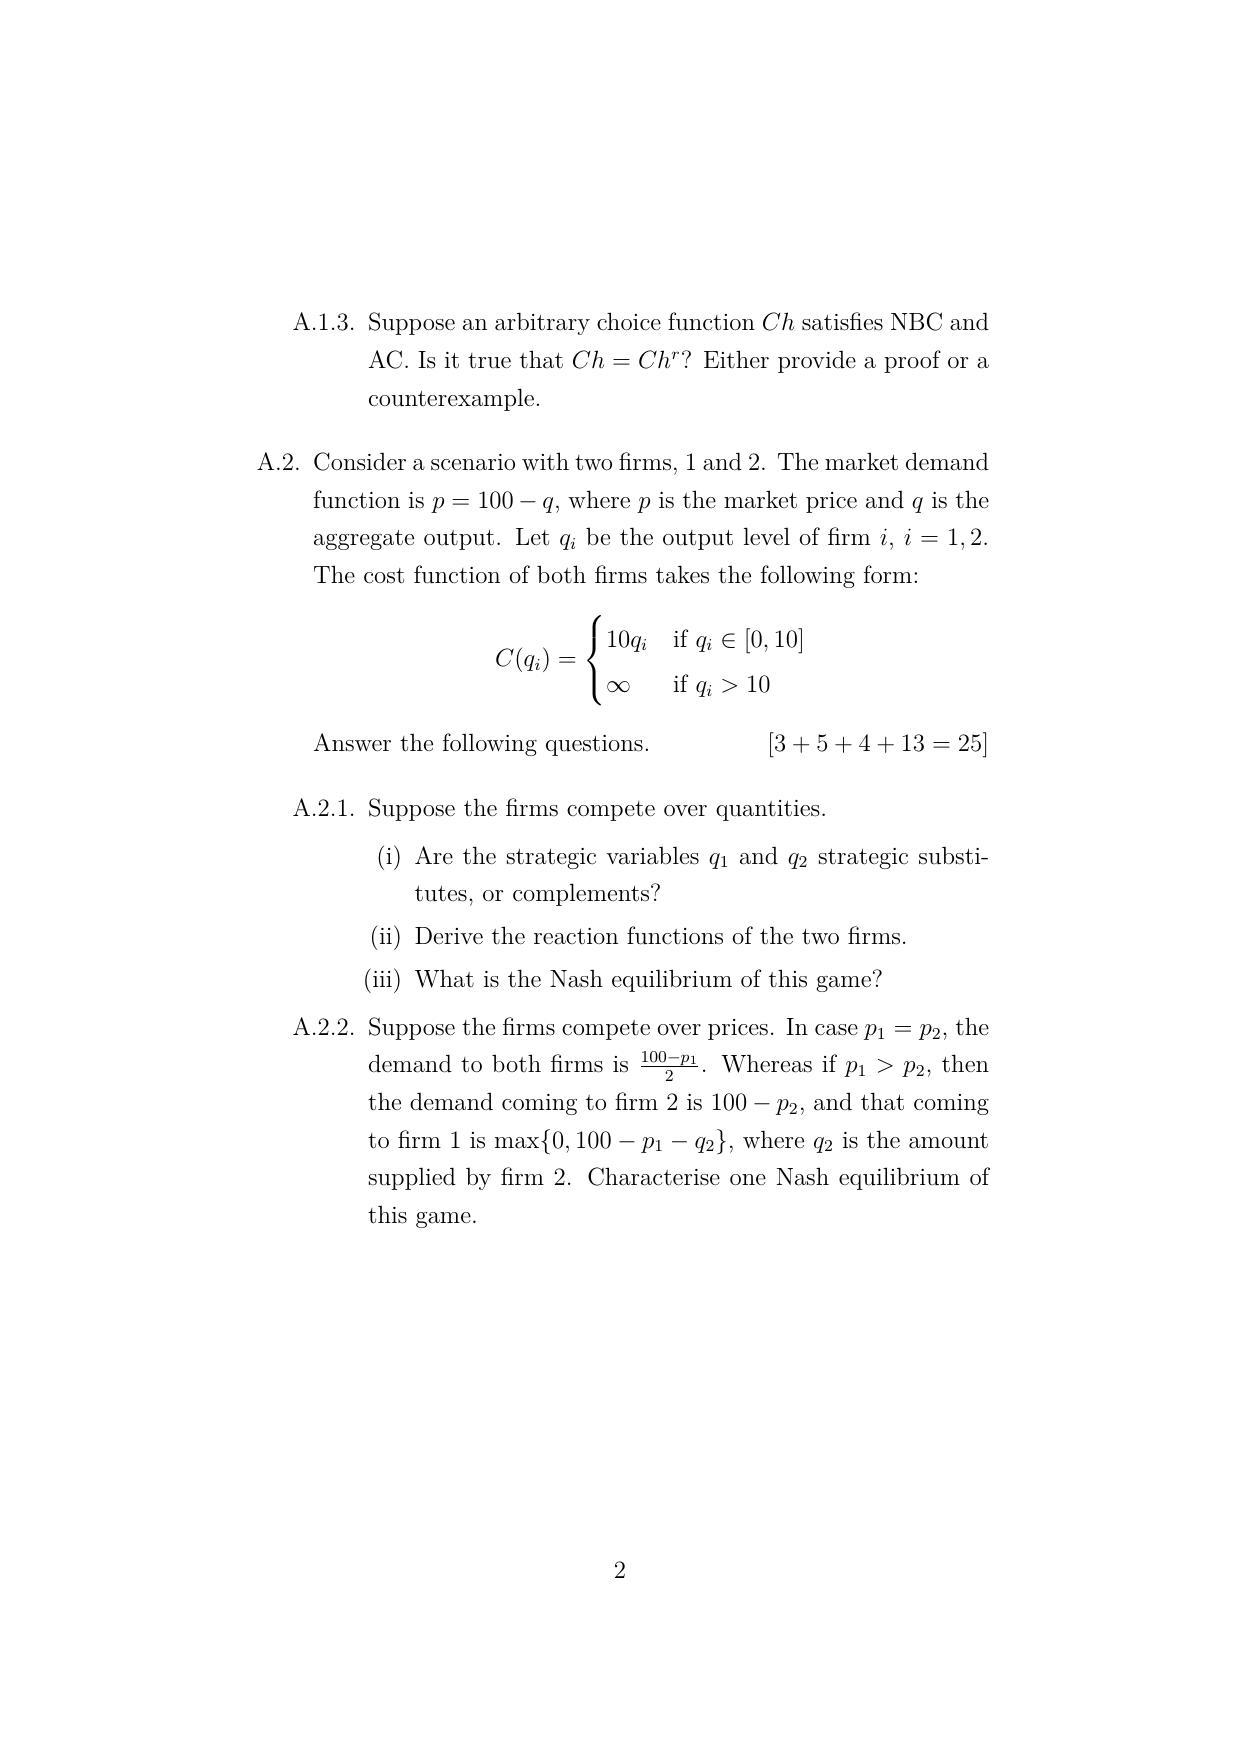 ISI Admission Test JRF in Quantitative Economics QEB 2022 Sample Paper - Page 2